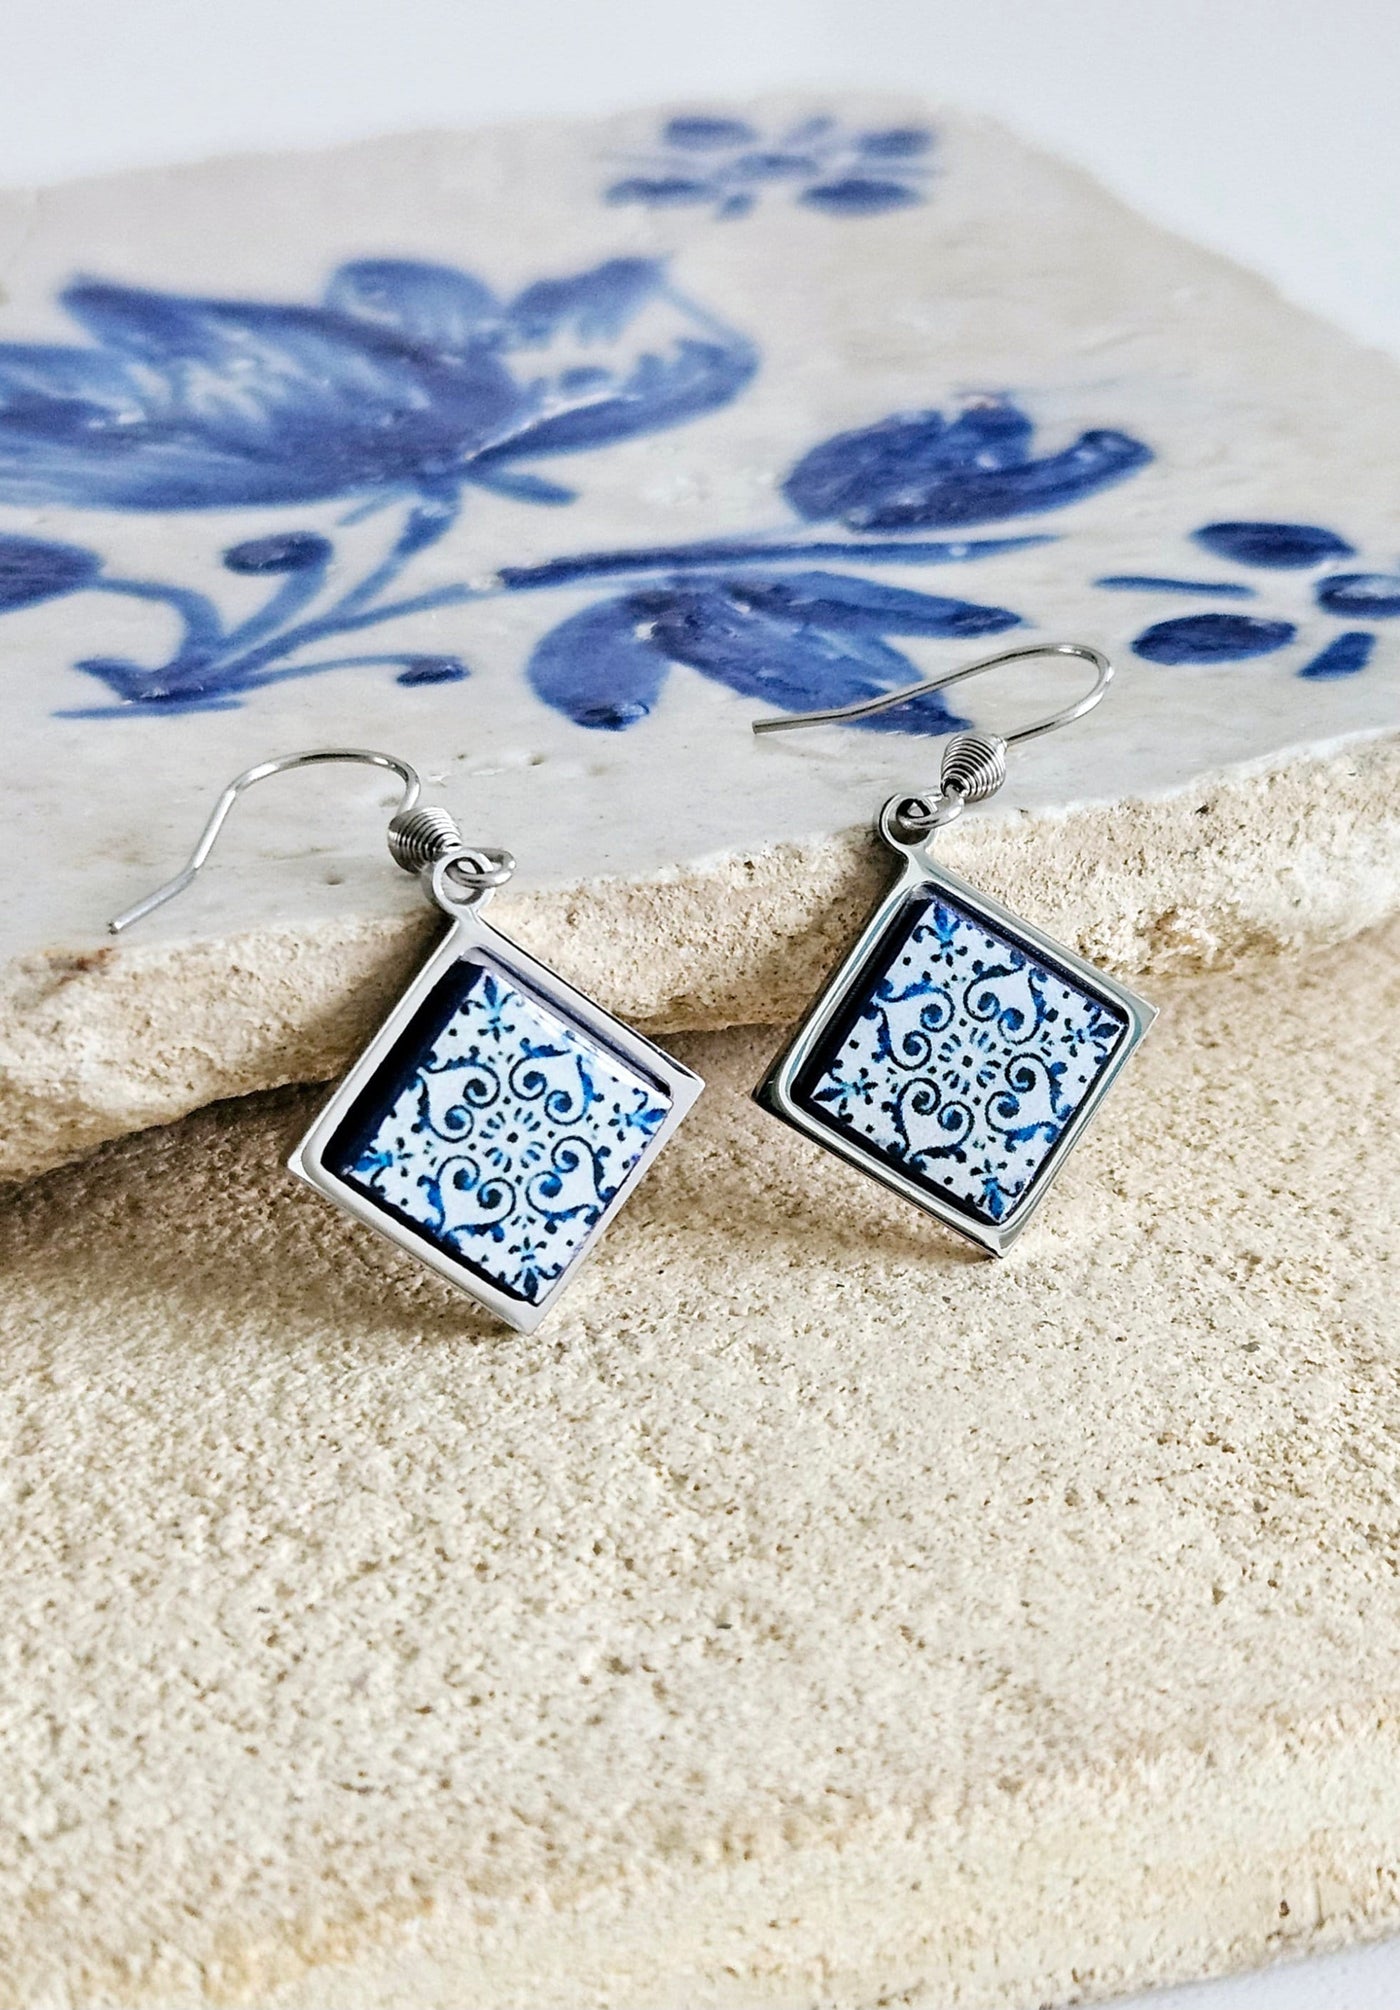 Blue Tile Diamond Shape Earring Silver Steel Dangle Earring Majolica Tile Earring Handmade Jewelry Gift Boho Earring Mom Gift Travel Gift